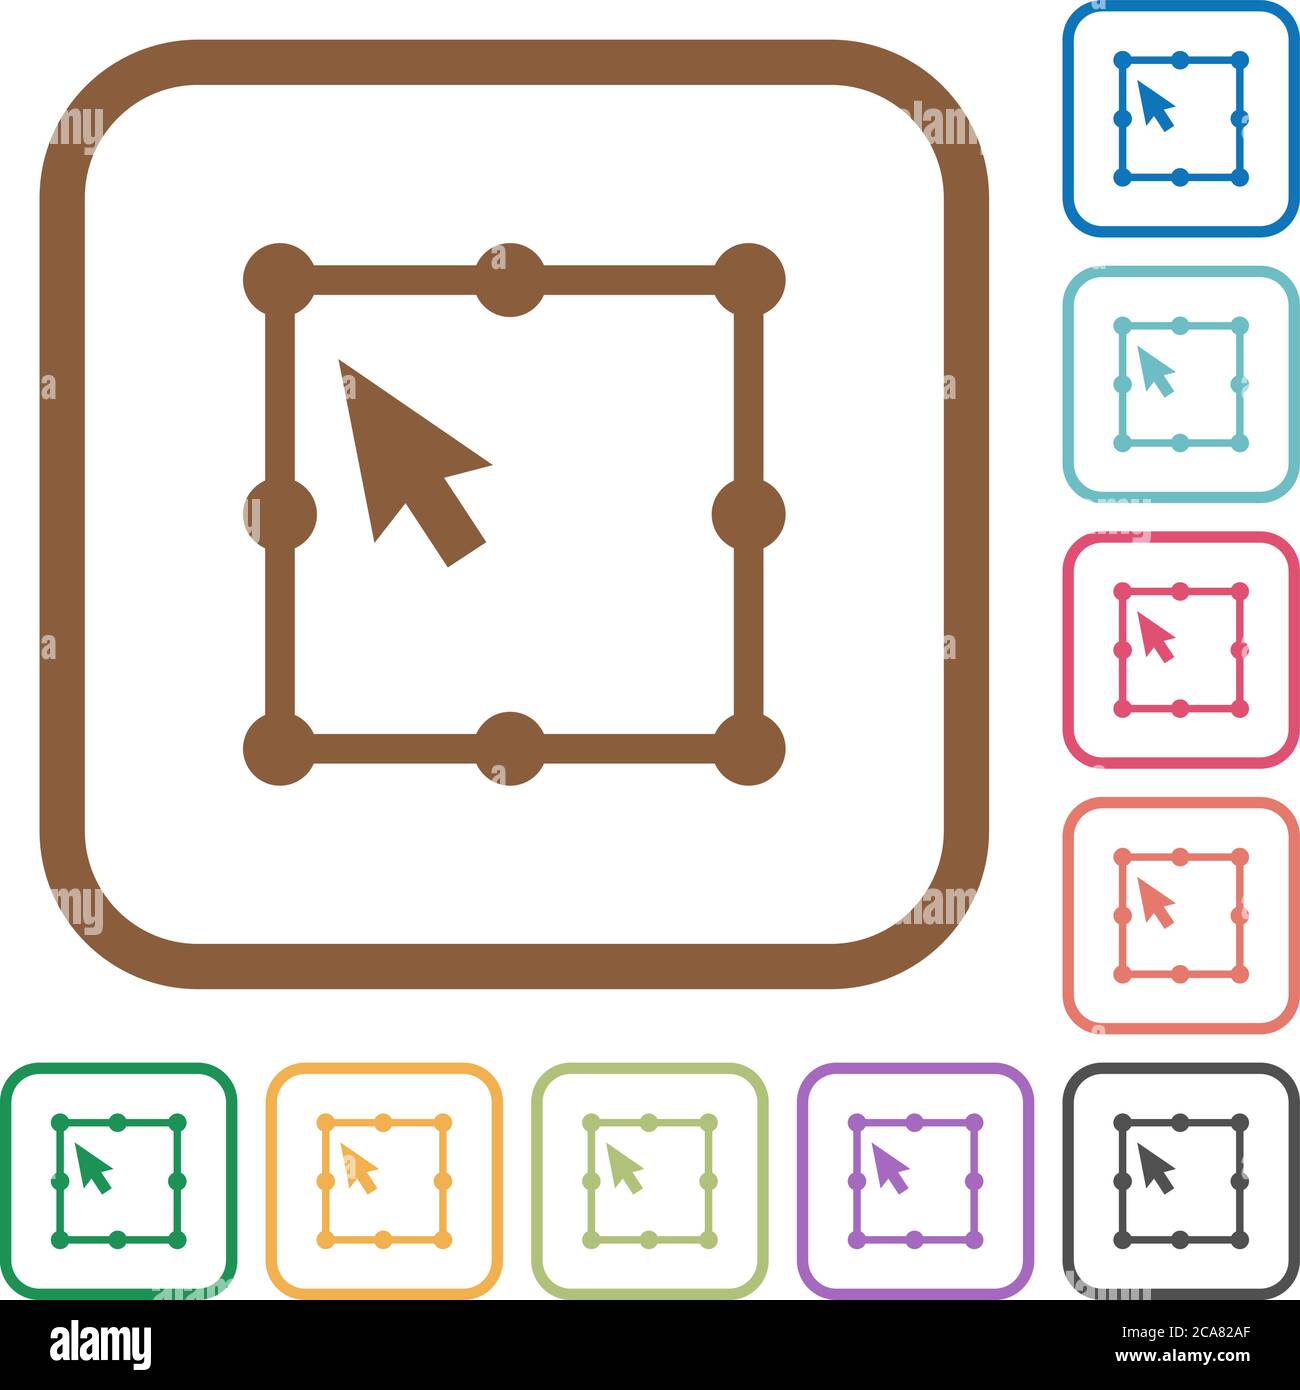 Free Transform Object icone semplici a colori cornici quadrate arrotondate su sfondo bianco Illustrazione Vettoriale